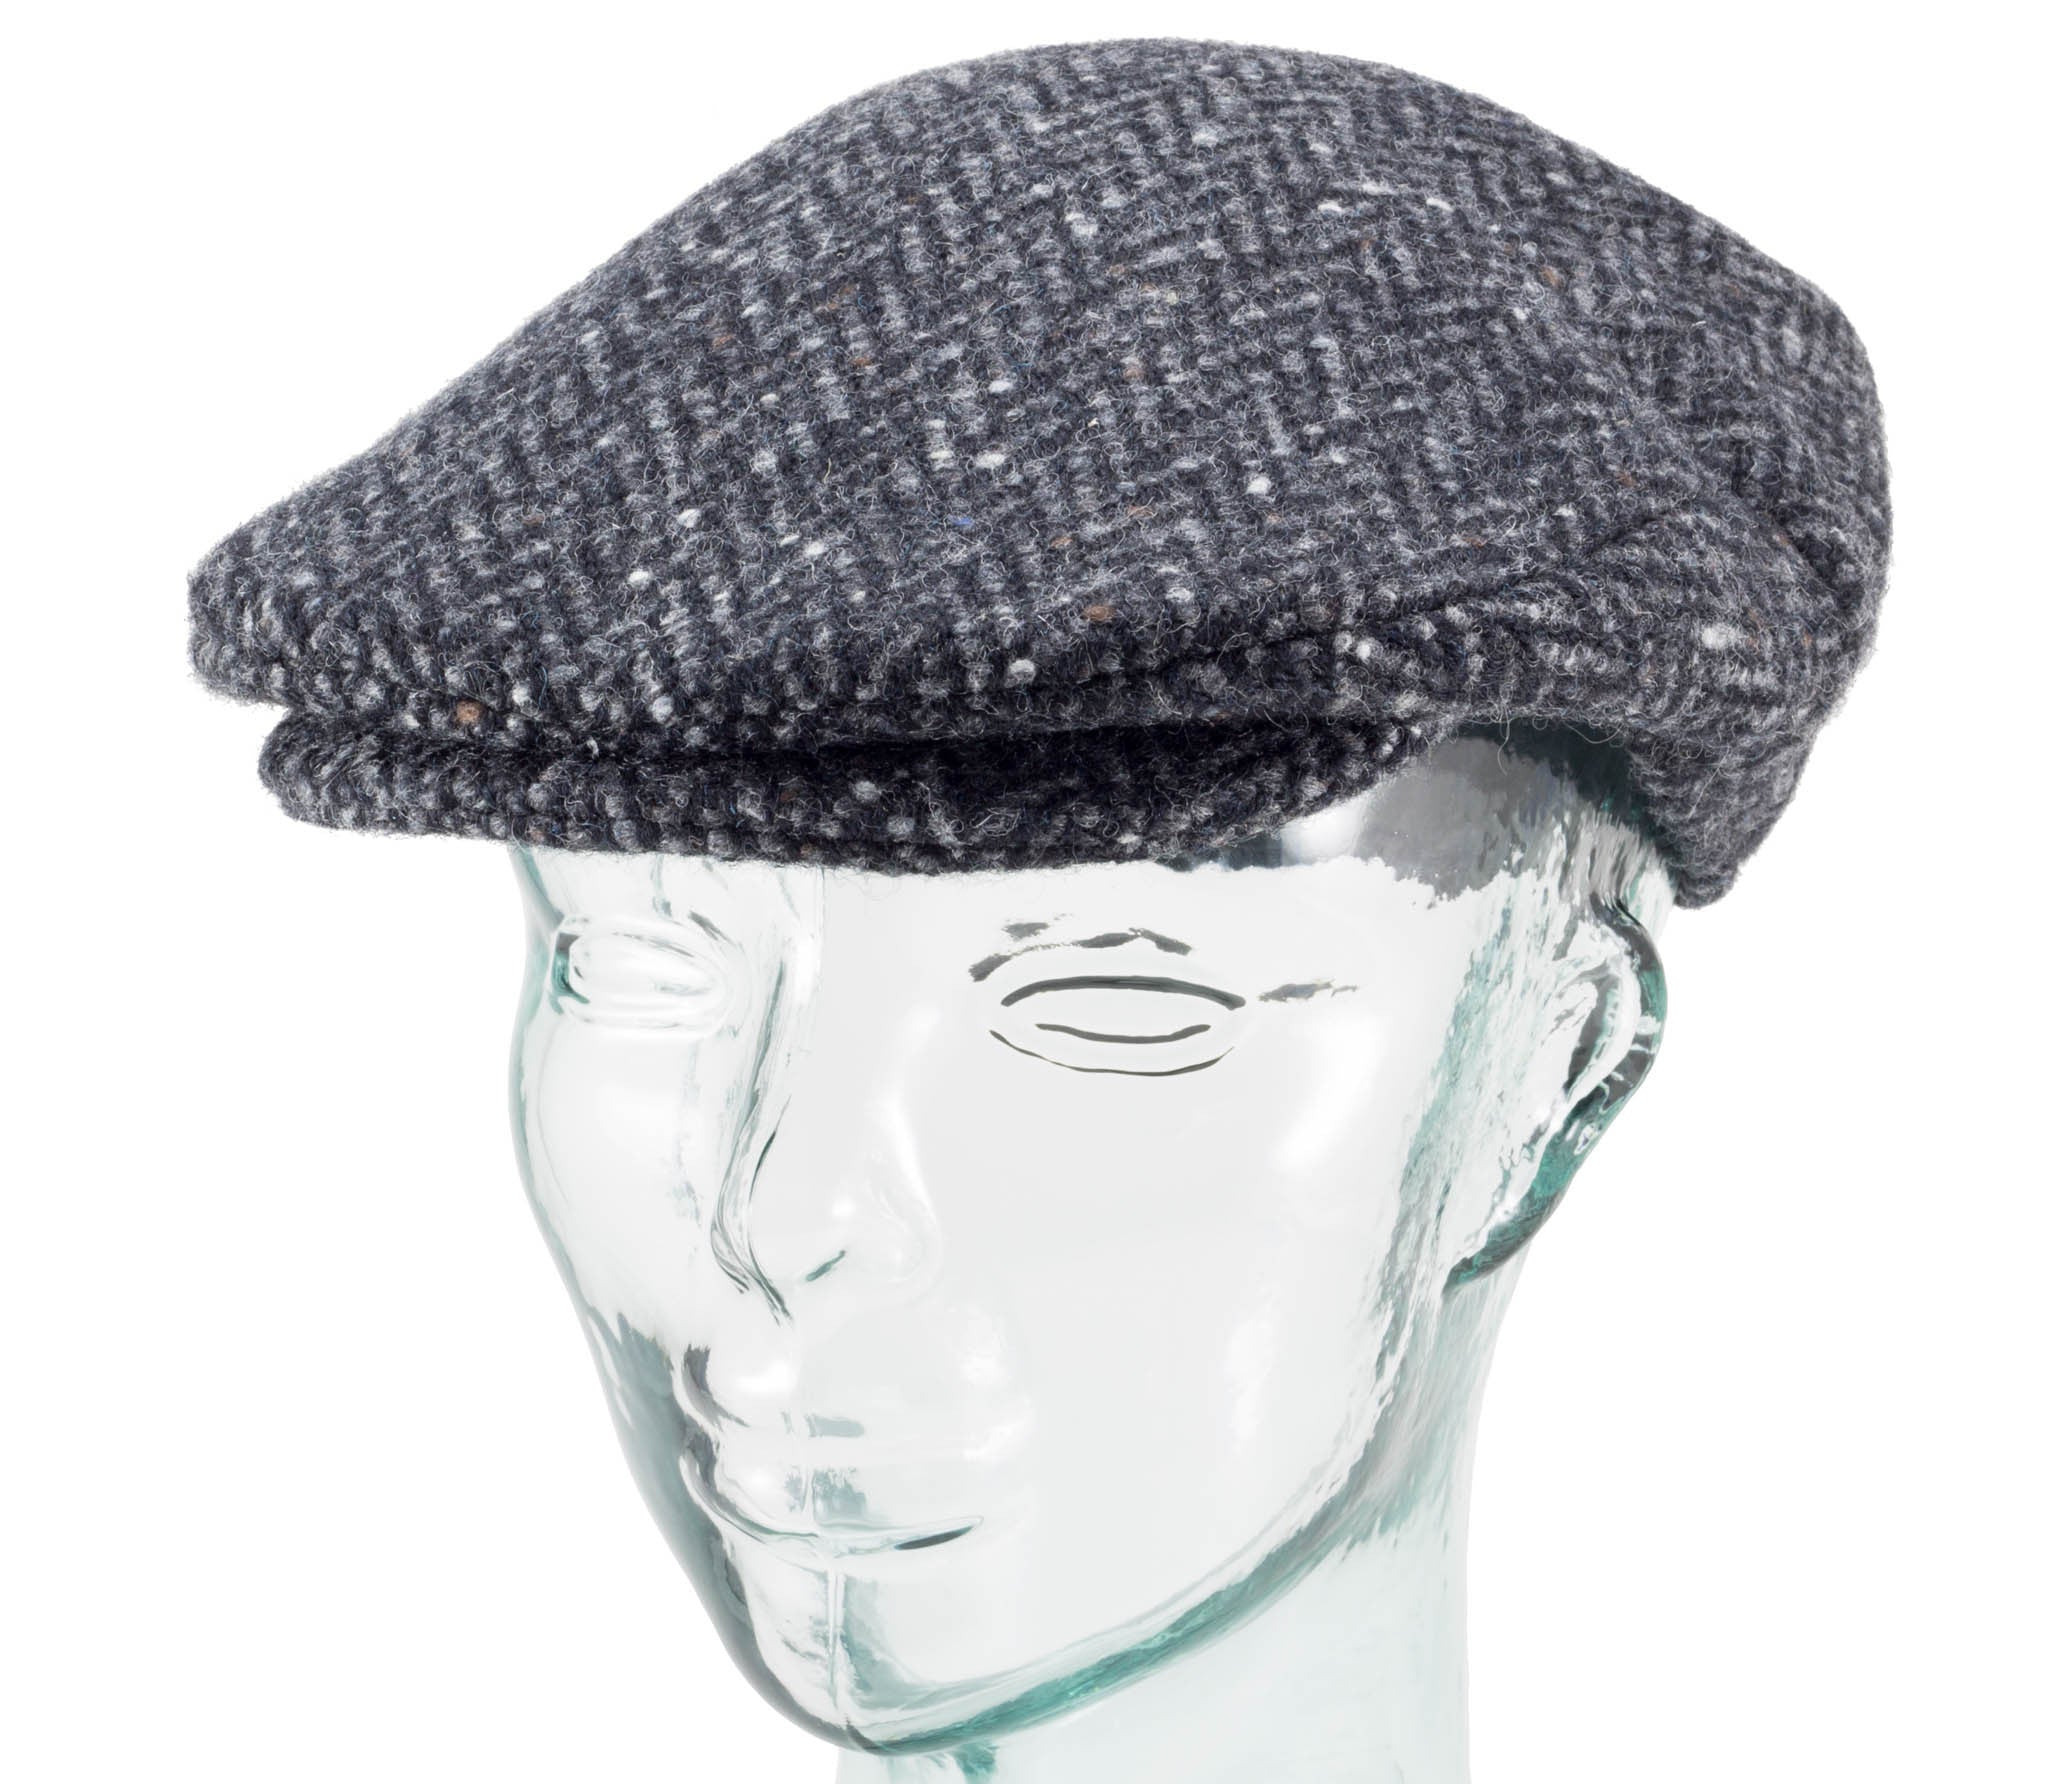 Handwoven Tweed - Vintage Style Cap